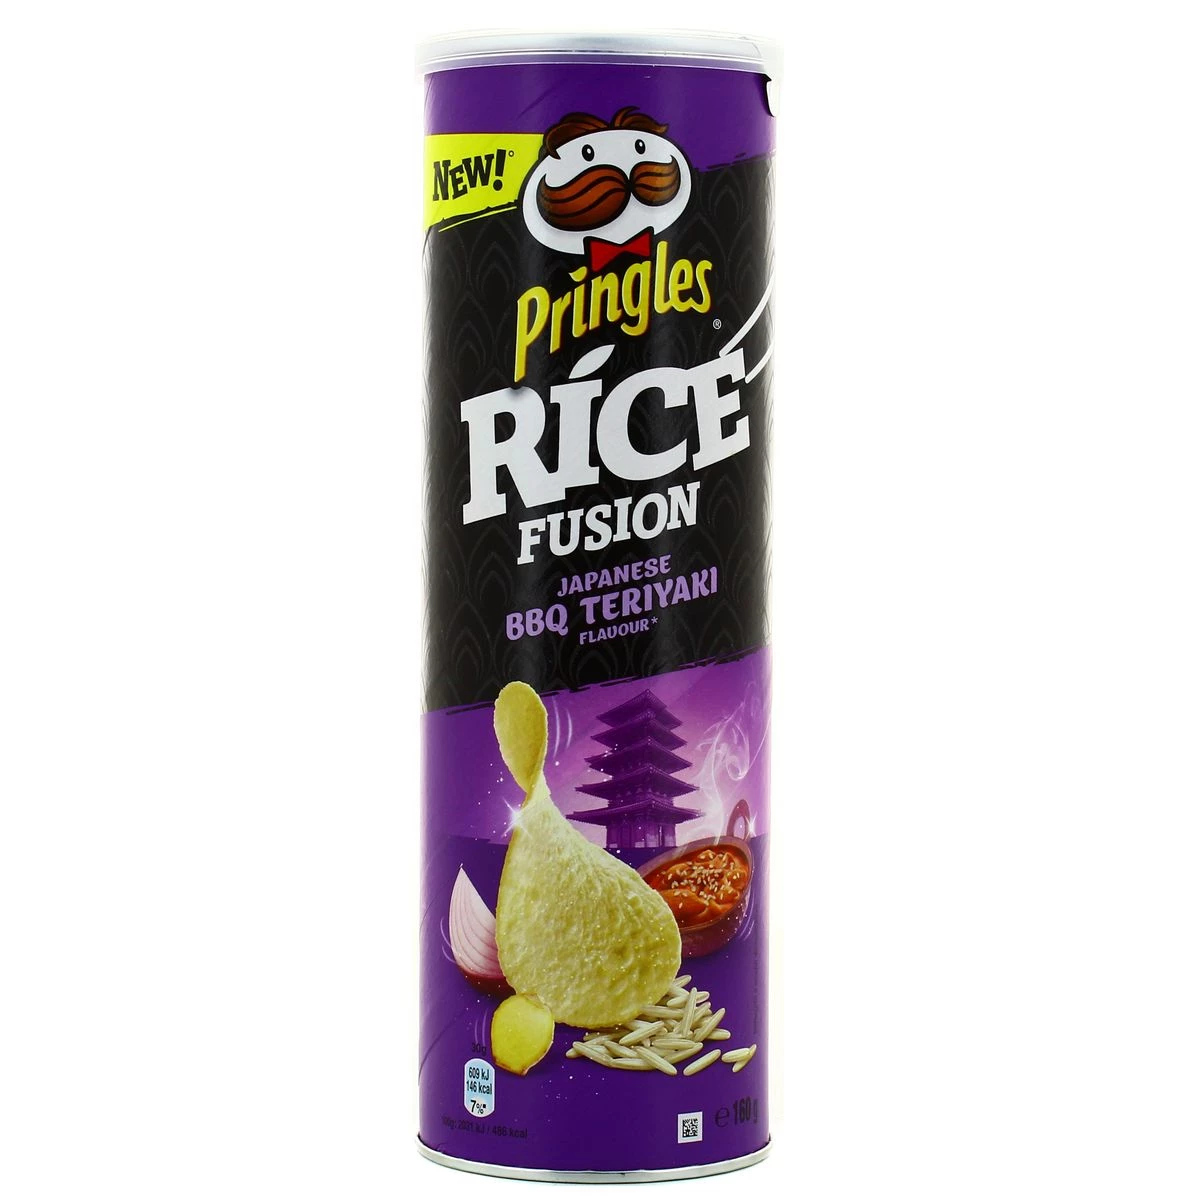 Pringle Ric Bbq Teryaki 160g